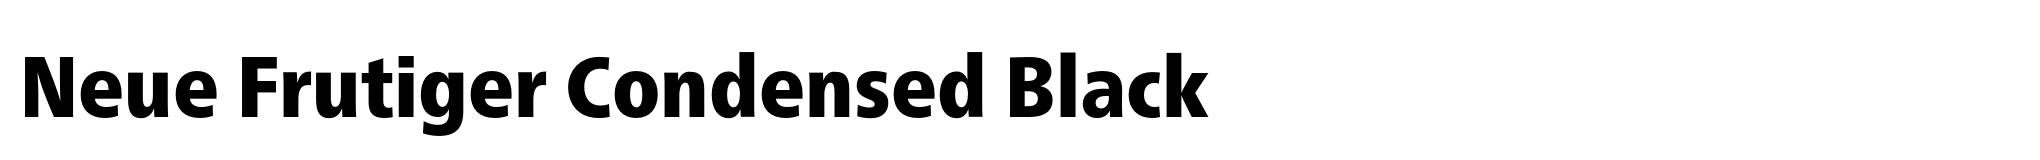 Neue Frutiger Condensed Black image